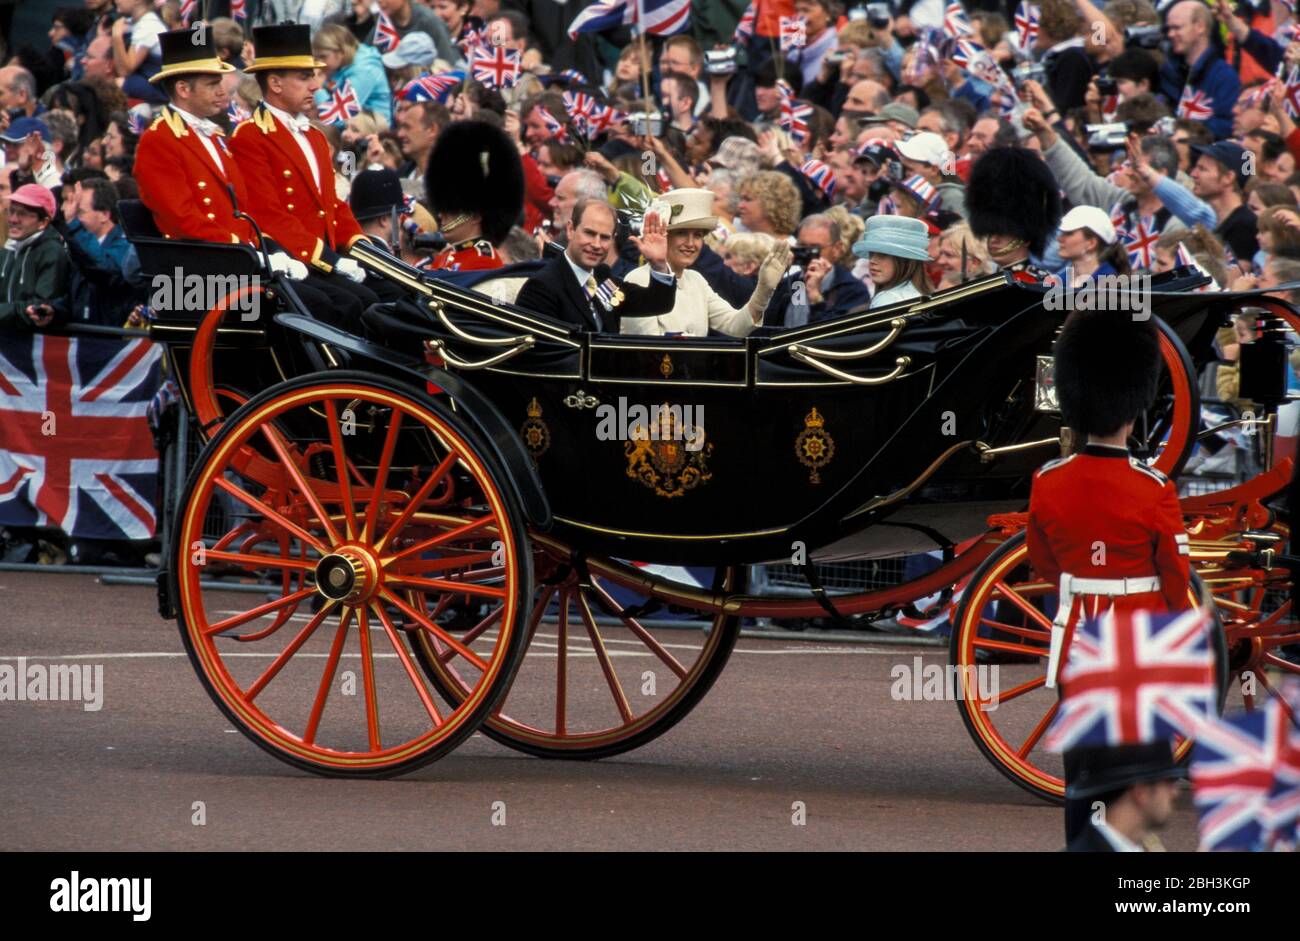 4th giugno 2002 - il Principe Edoardo, Sophie Contessa di Wessex e la Principessa Eugenie lasciano Buckingham Palace durante la parata del Giubileo d'oro della Regina Elisabetta a Londra, Regno Unito Foto Stock